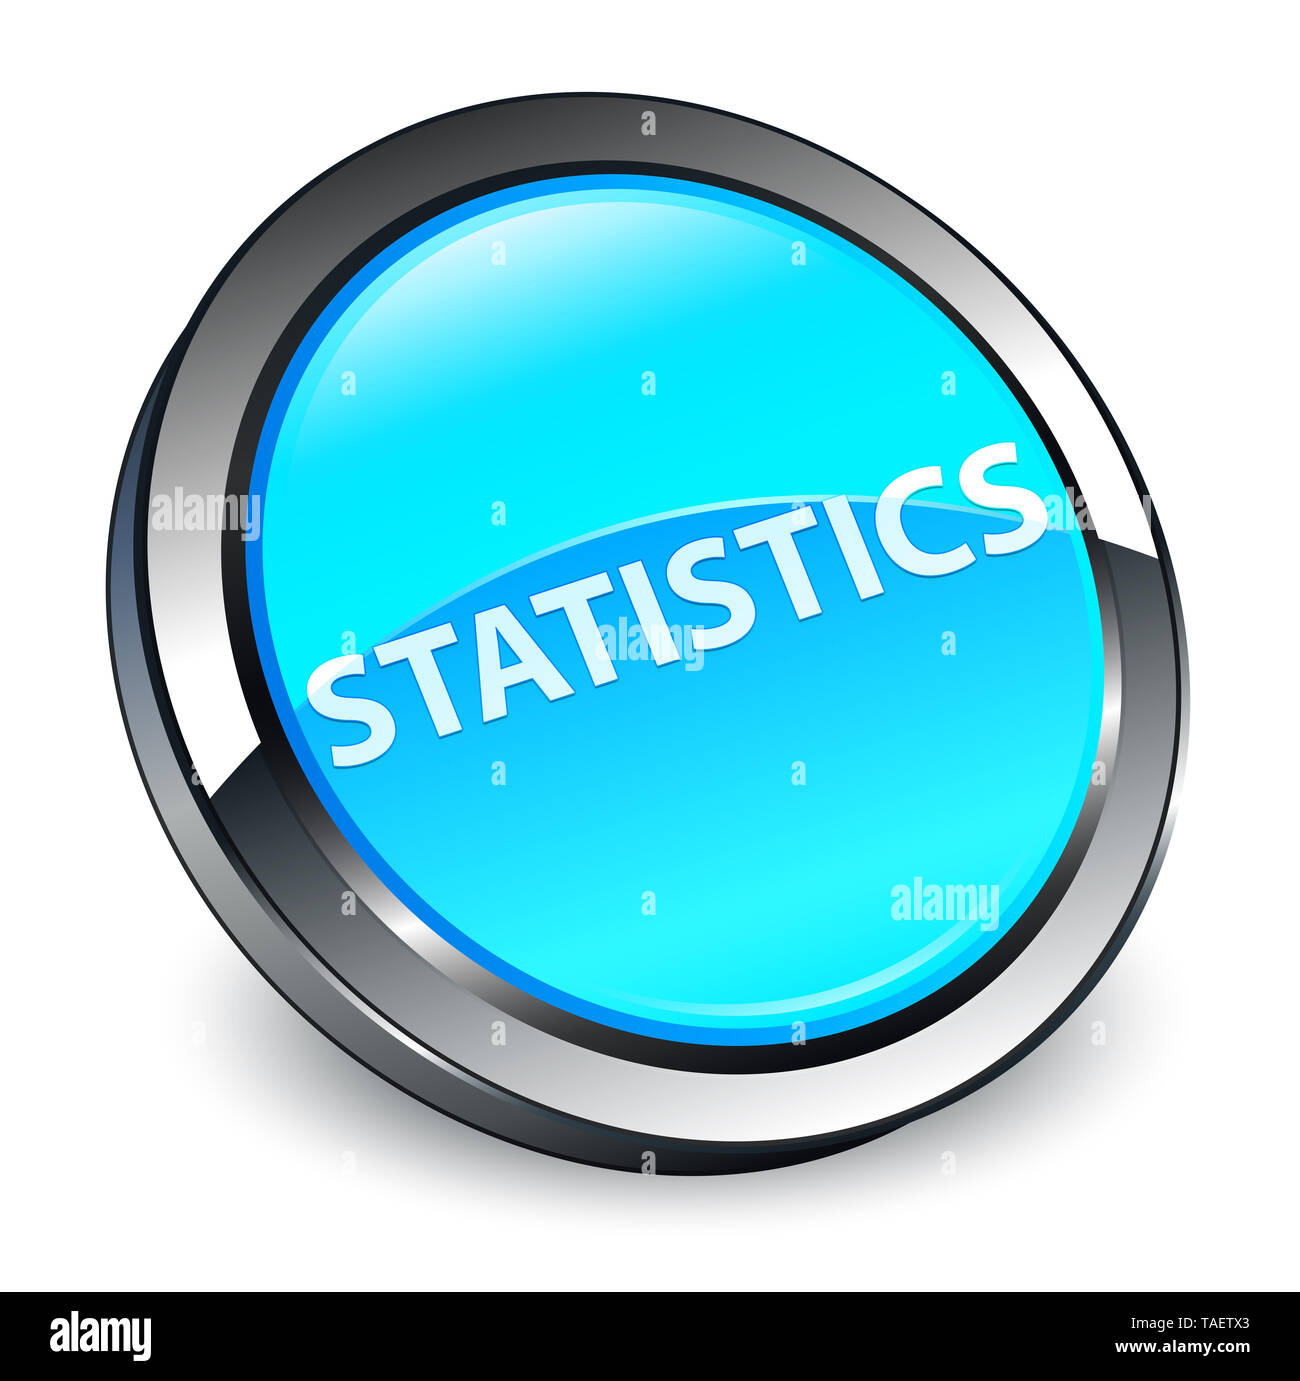 Statistiche isolati su 3d blu ciano pulsante rotondo illustrazione astratta Foto Stock